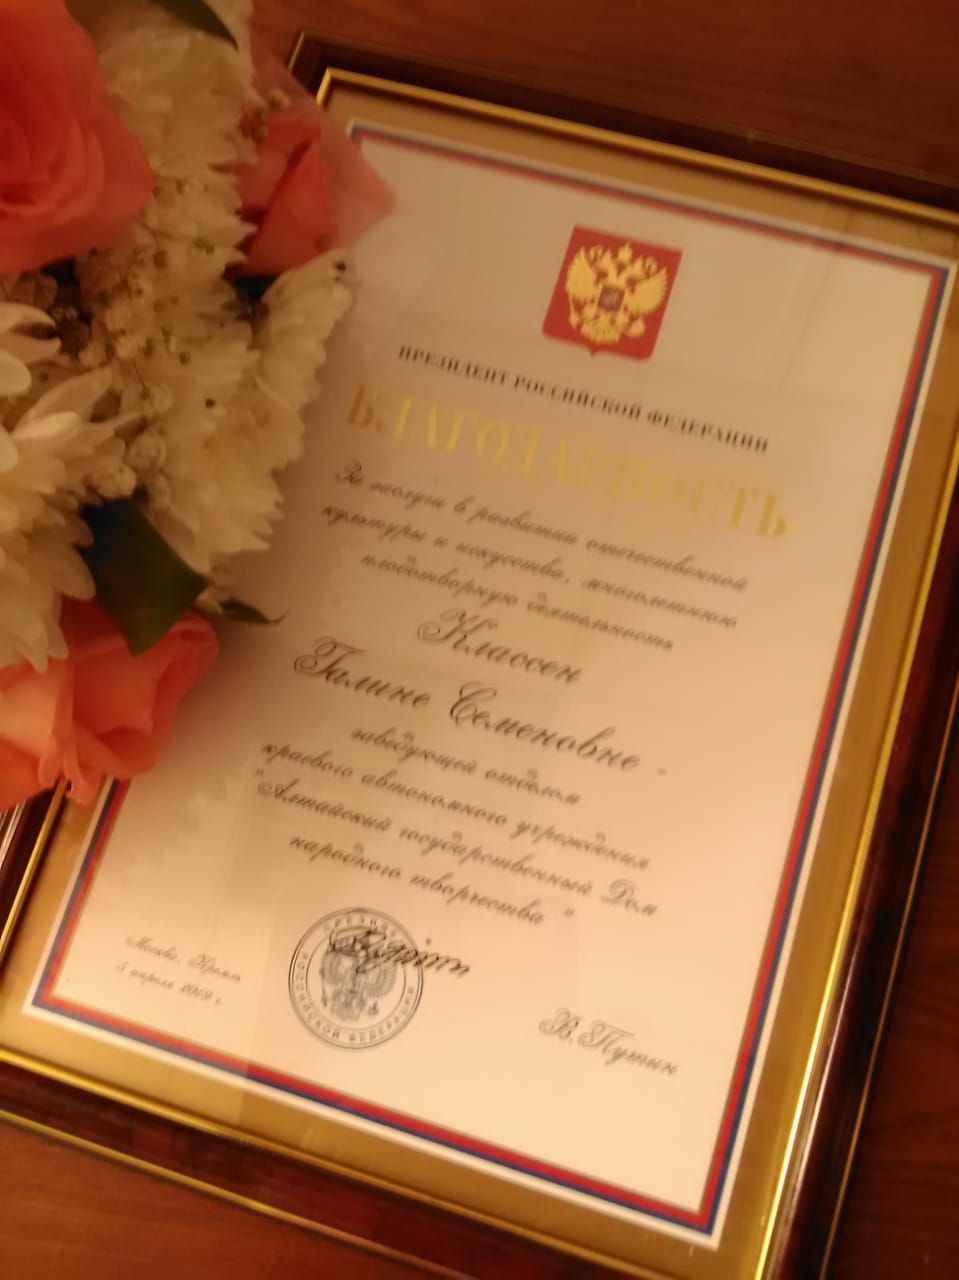 21 июня 2019 года  Губернатор  Алтайского края Виктор Томенко  вручил высокие  награды шести работникам культуры края